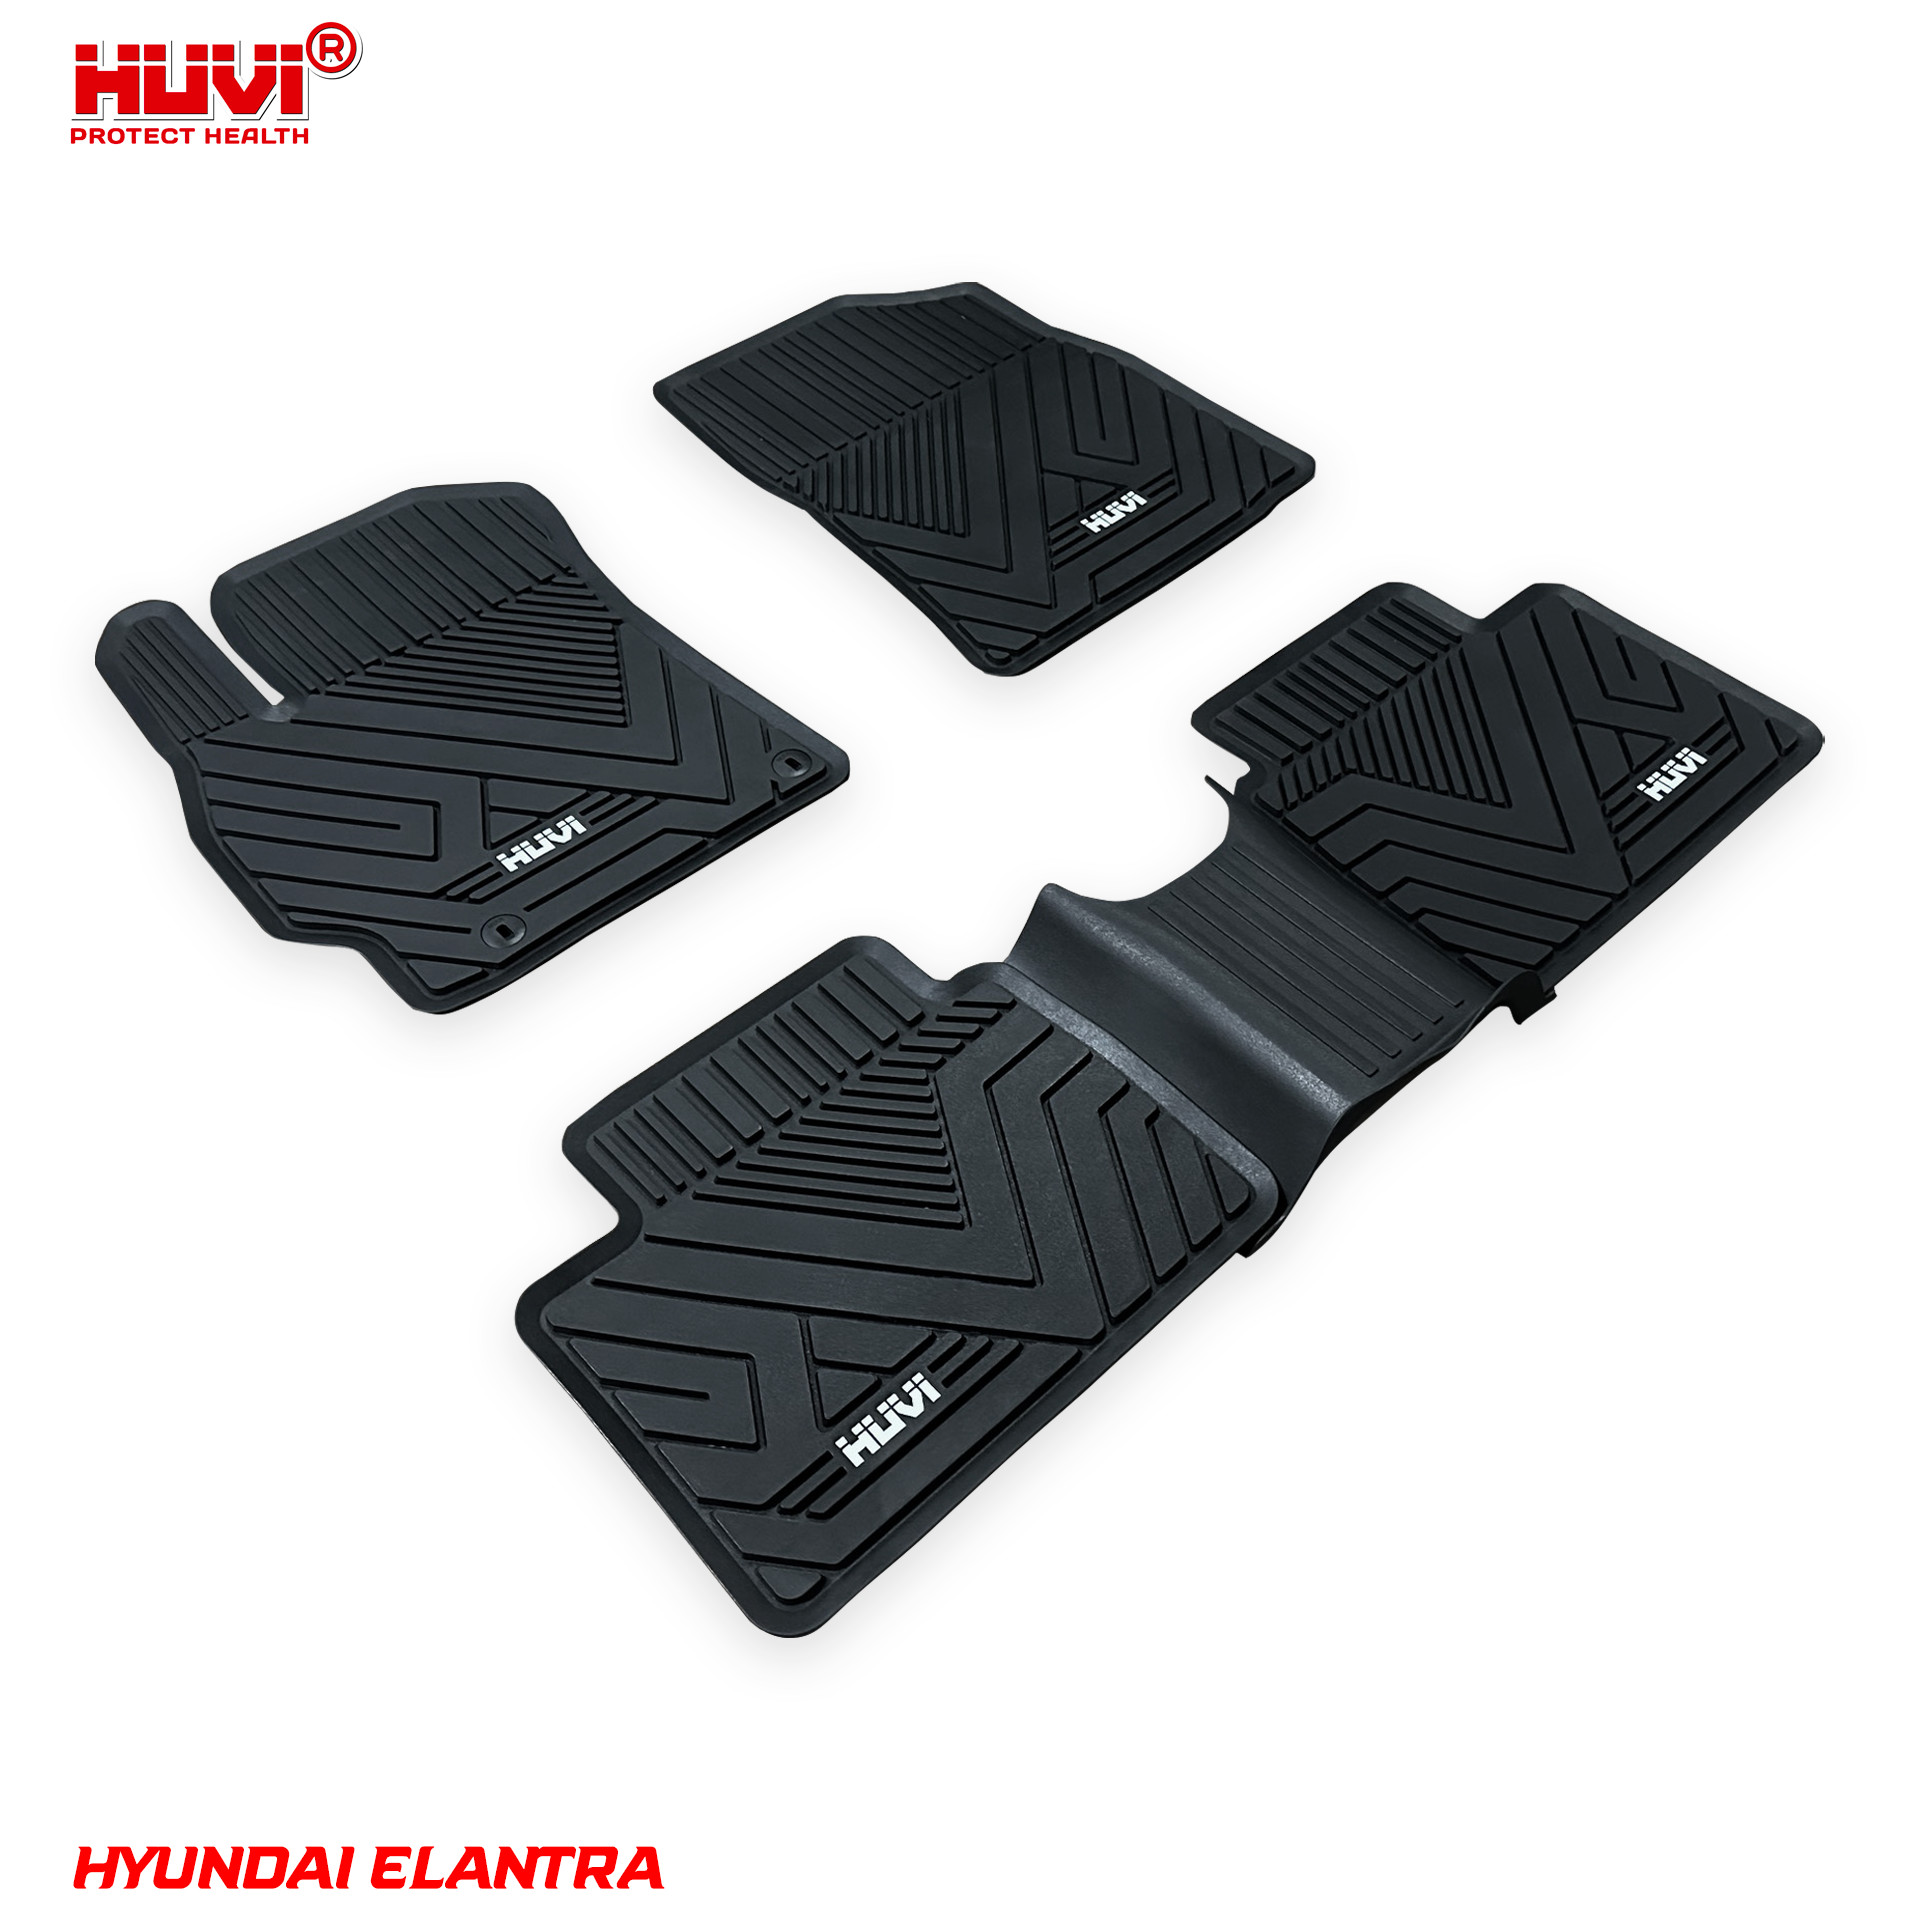 Thảm lót sàn ô tô Hyundai Elantra từ nhựa TPE nguyên sinh cao cấp không mùi, không chứa chất độc hại.